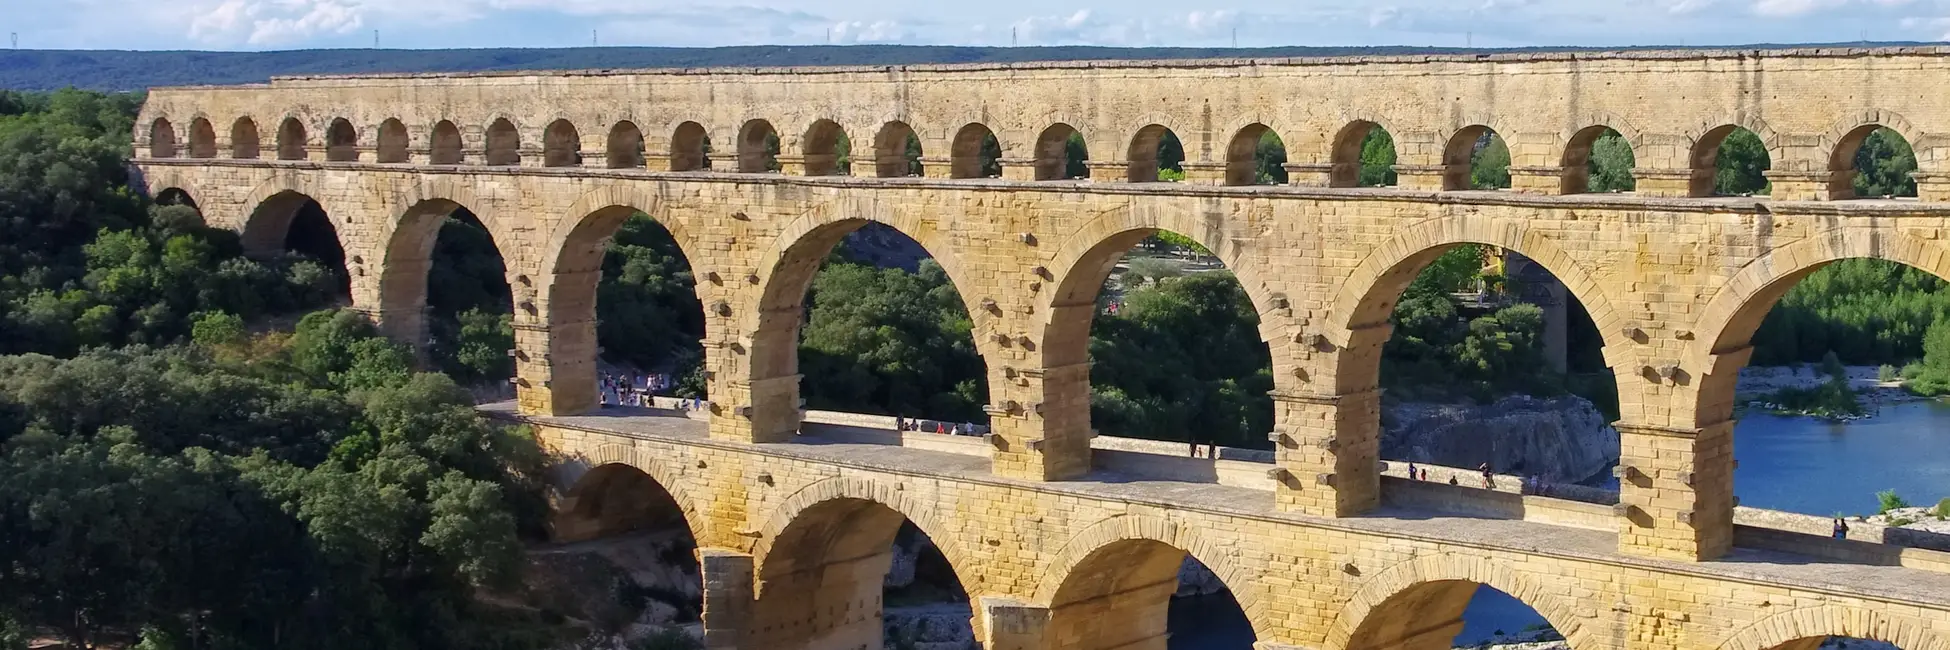 Le grandiose pont du Gard 